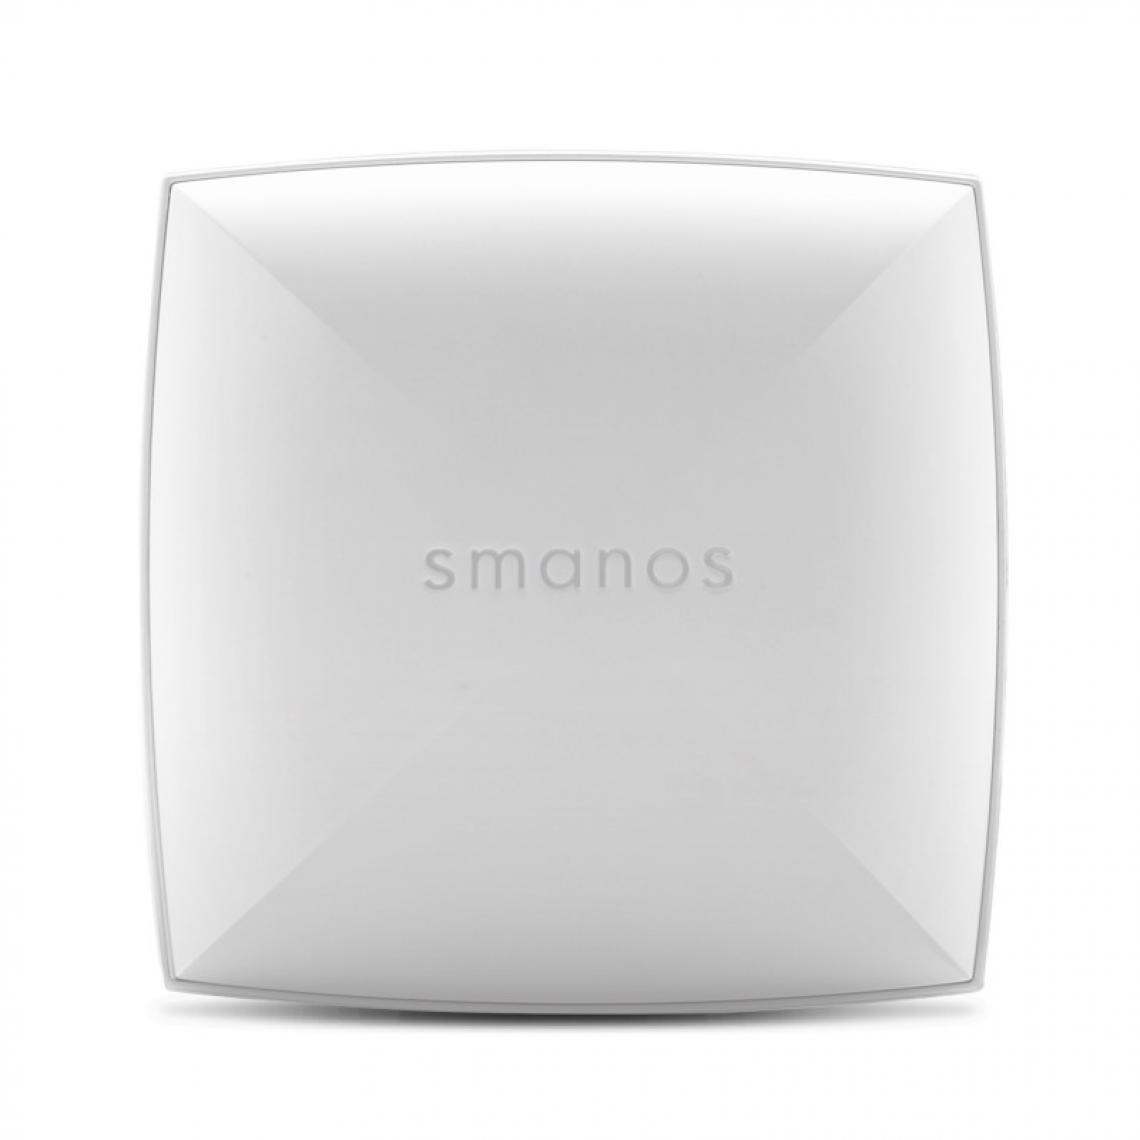 Smanos - SMANOS - WI-20 - Caméra de surveillance connectée